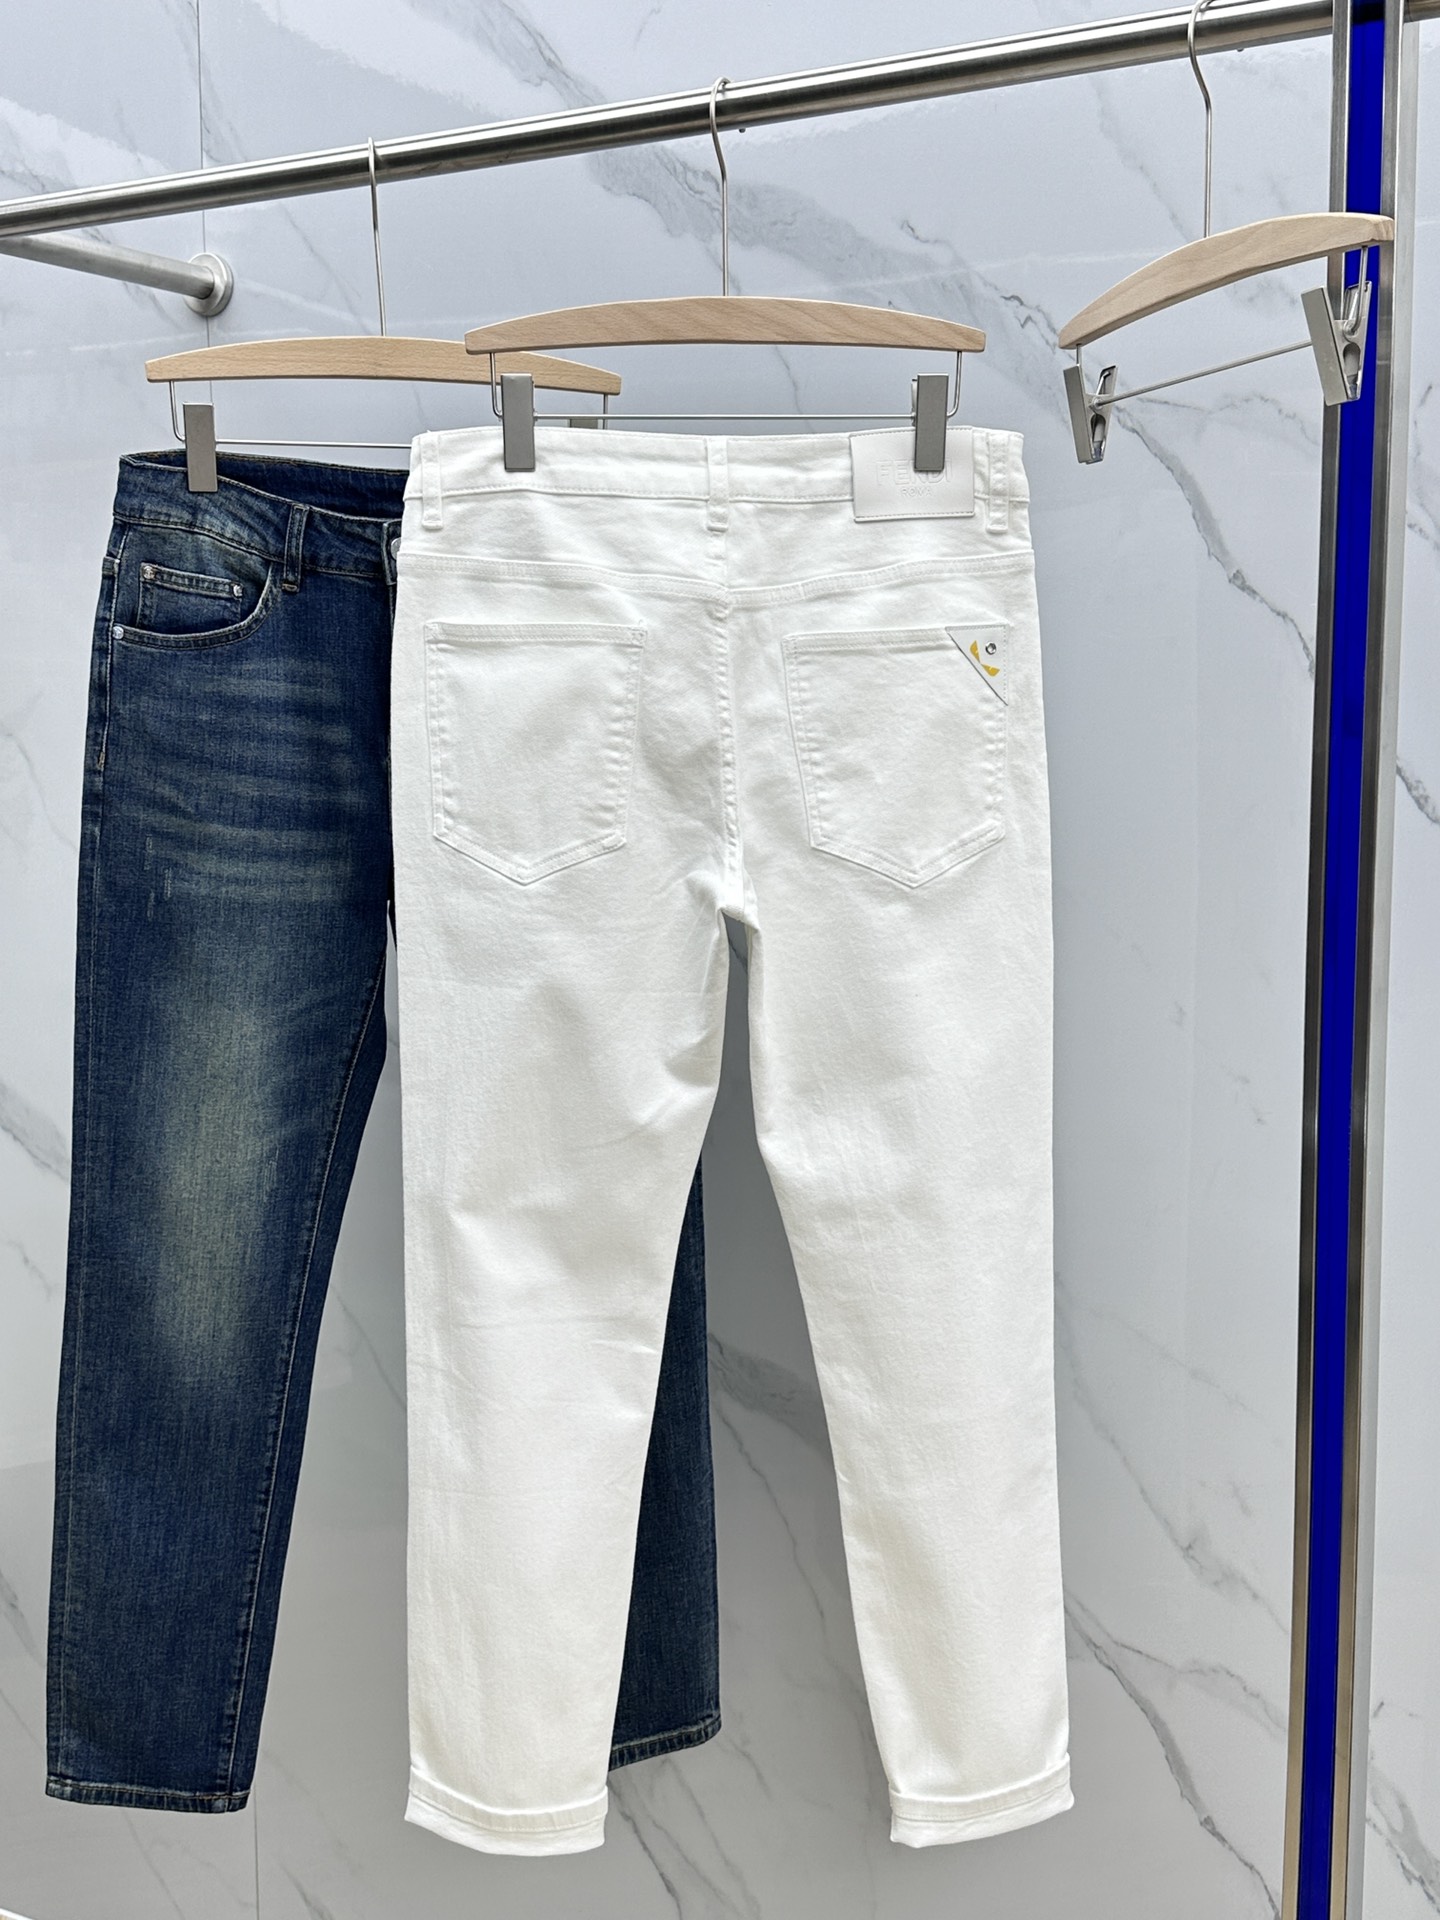 新作入荷格安 フェンディ服メンズコピー デニム素材 筒形パンツ ズボン ファッション シンプル 美脚 品質保証 ホワイト_1